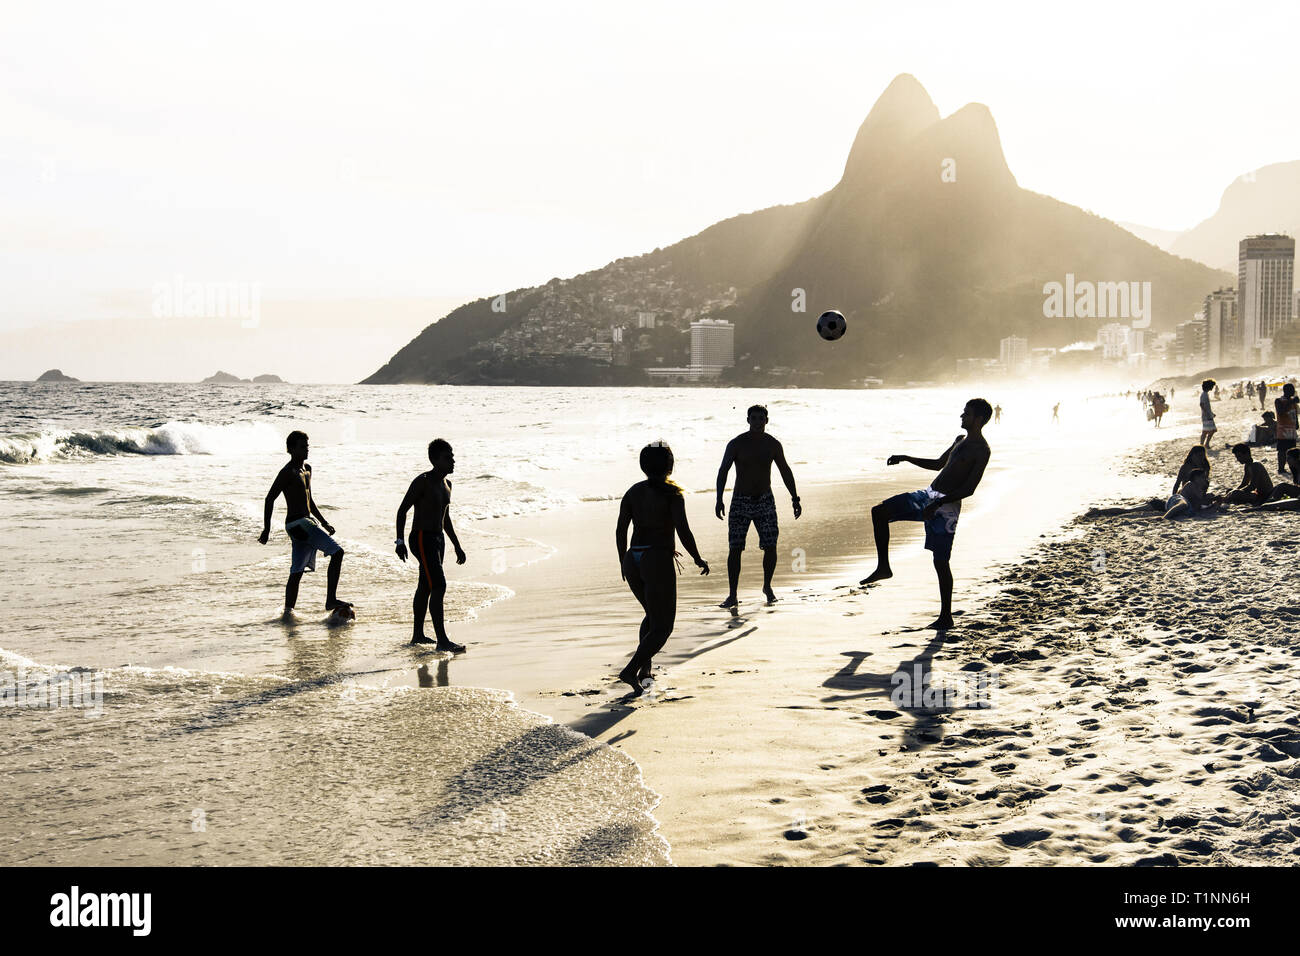 RIO DE JANEIRO, Brésil - 24 février 2015 : un groupe de Brésiliens jouant sur le rivage de la plage d'Ipanema, avec la célèbre montagne Dois Irmãos derrière t Banque D'Images